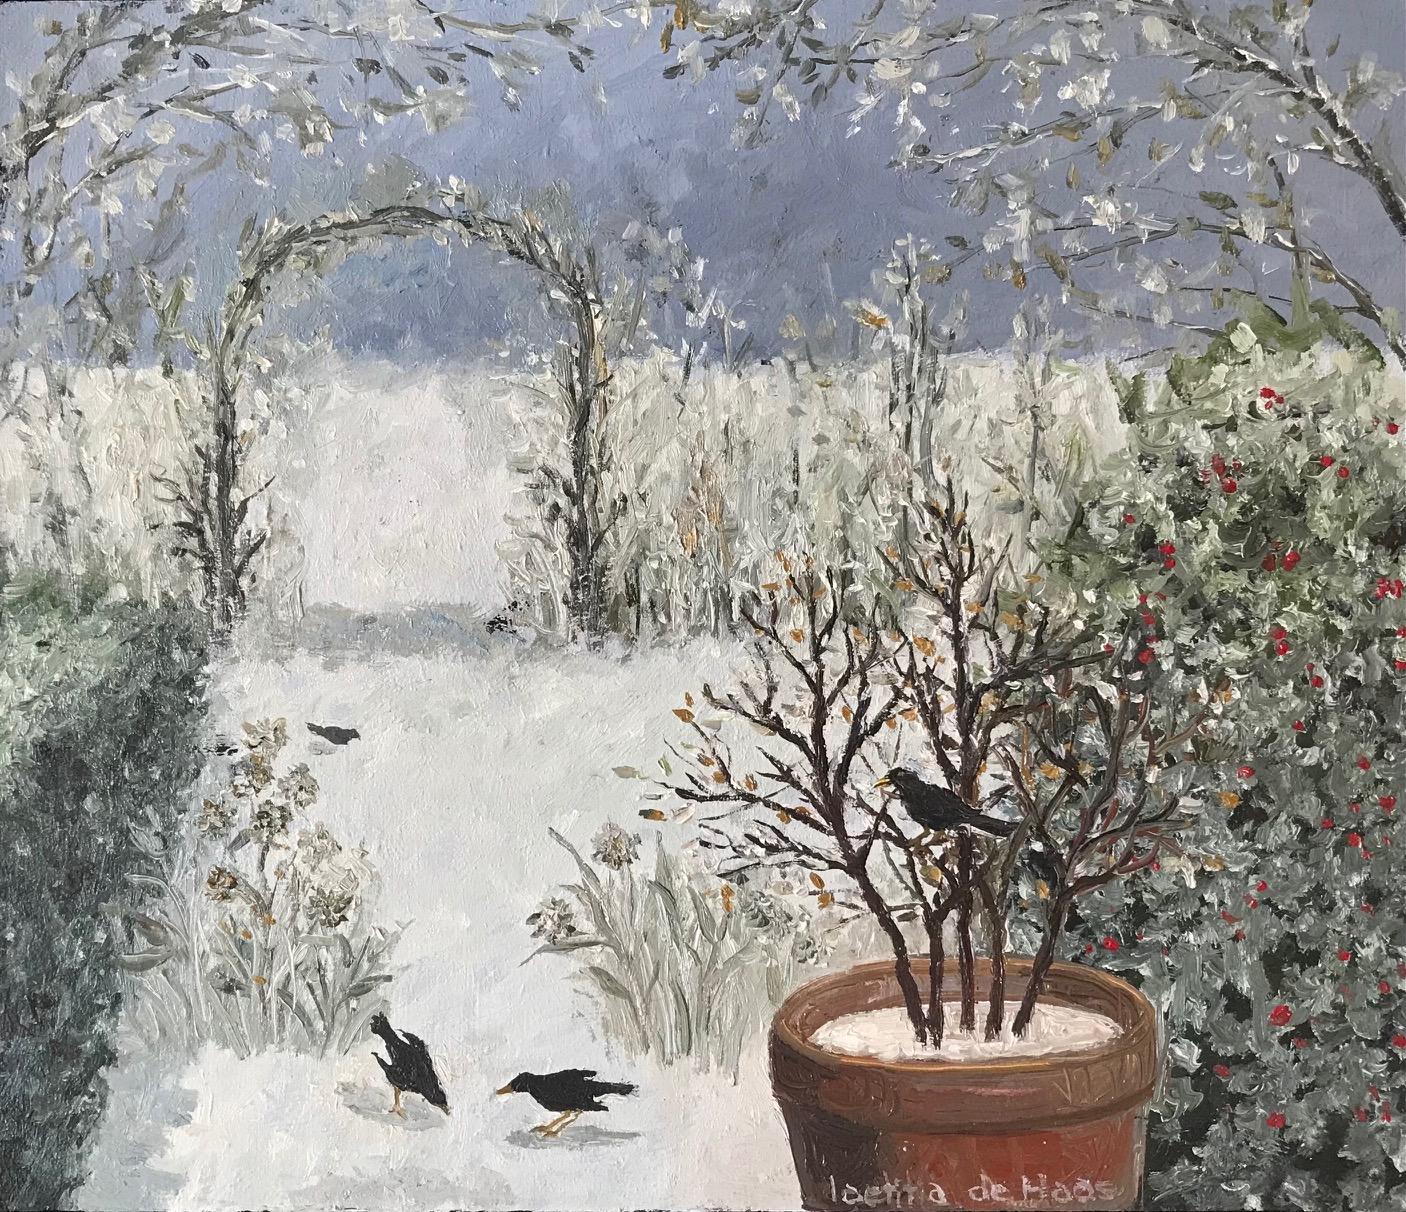 Figurative Painting Laetitia de Haas - « Oiseaux dans un jardin d'hiver » - Peinture néerlandaise cosy d'un jardin d'hiver